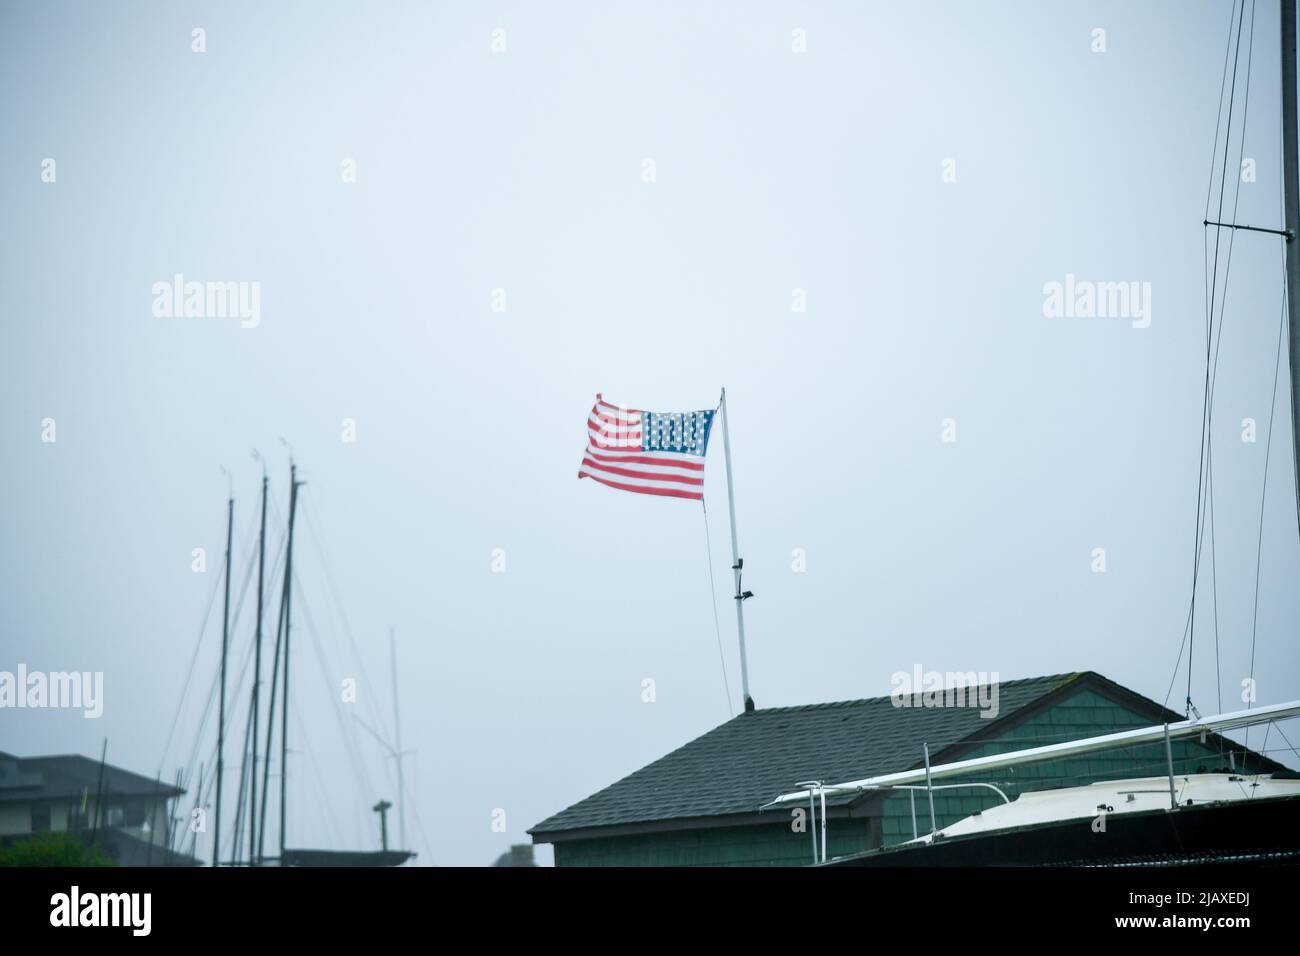 Stock-Fotos von Tropical Storm Elsa aus dem Jahr 2021 Drenching Newport, Rhode Island. Blick auf Regen und amerikanische Flagge auf der Windschutzscheibe während eines Sturms. Stockfoto